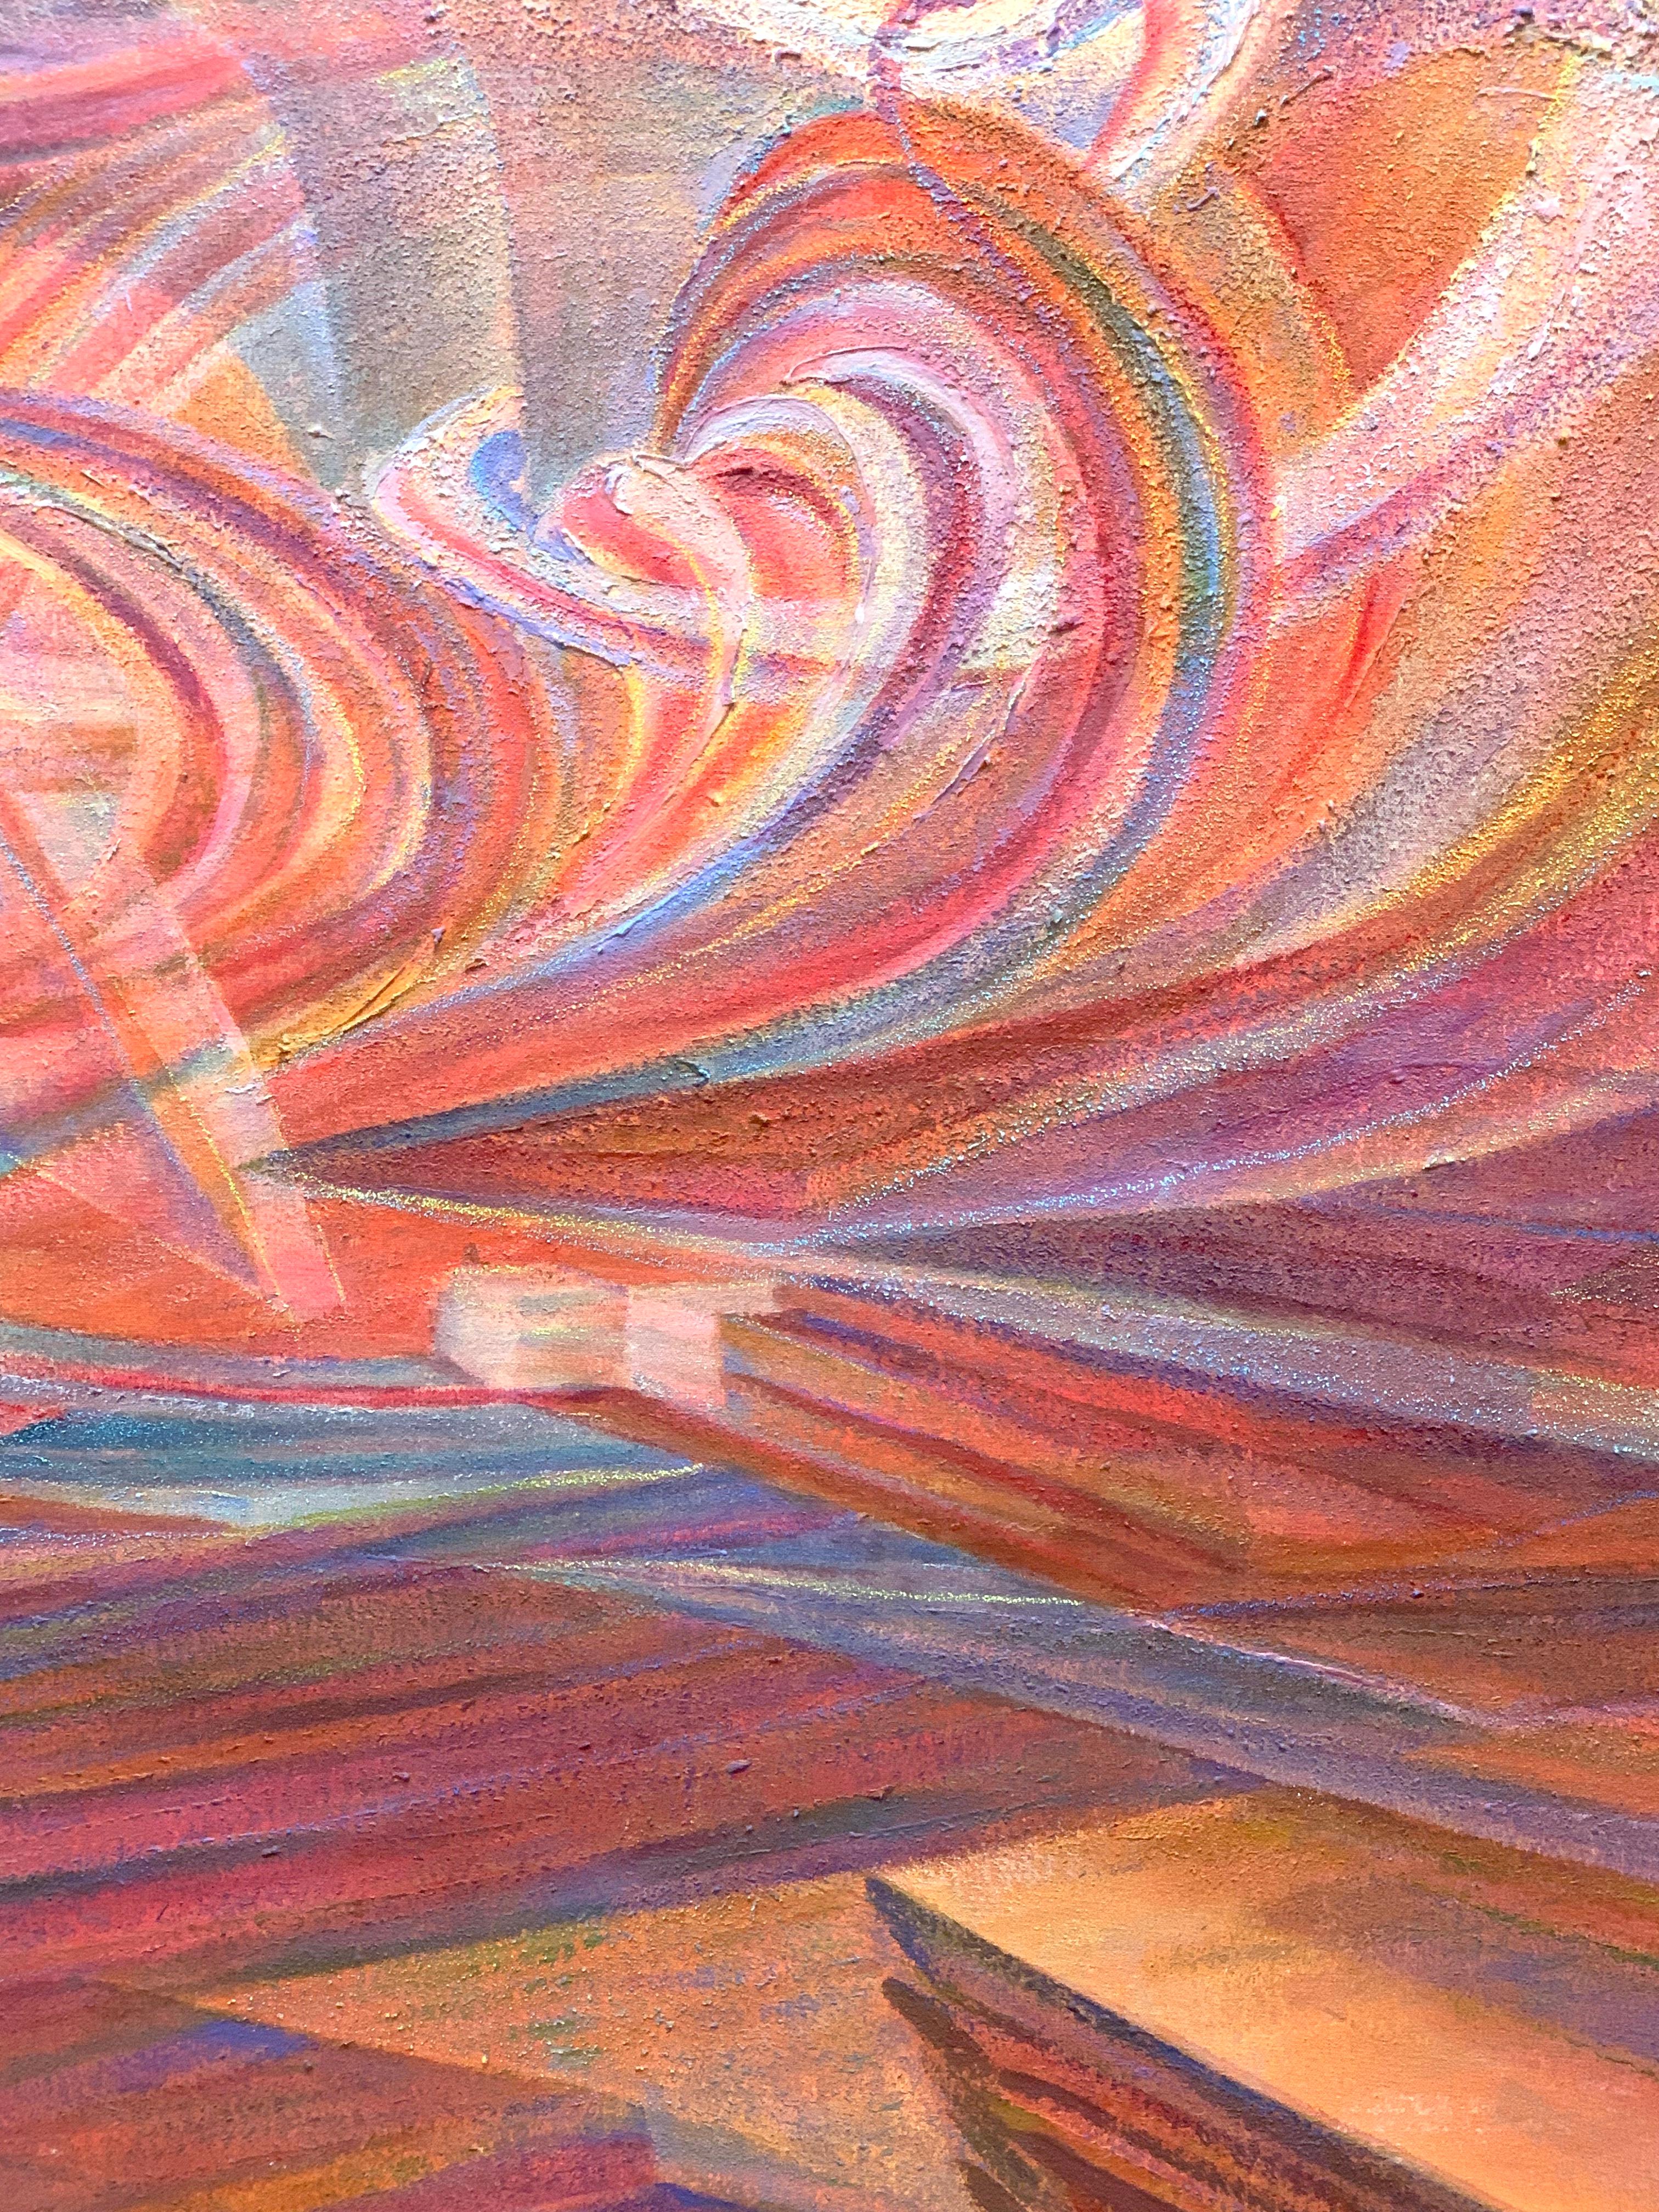 Lovescape, 1999
Acrylique sur toile
46 x 64 in. (116.8 x 162.6 cm)
Signé, titré et daté au verso

Au cœur de l'œuvre de Bousfield se trouve une célébration lyrique de la couleur et des sensations tactiles. Des paysages géométriques aux paysages de